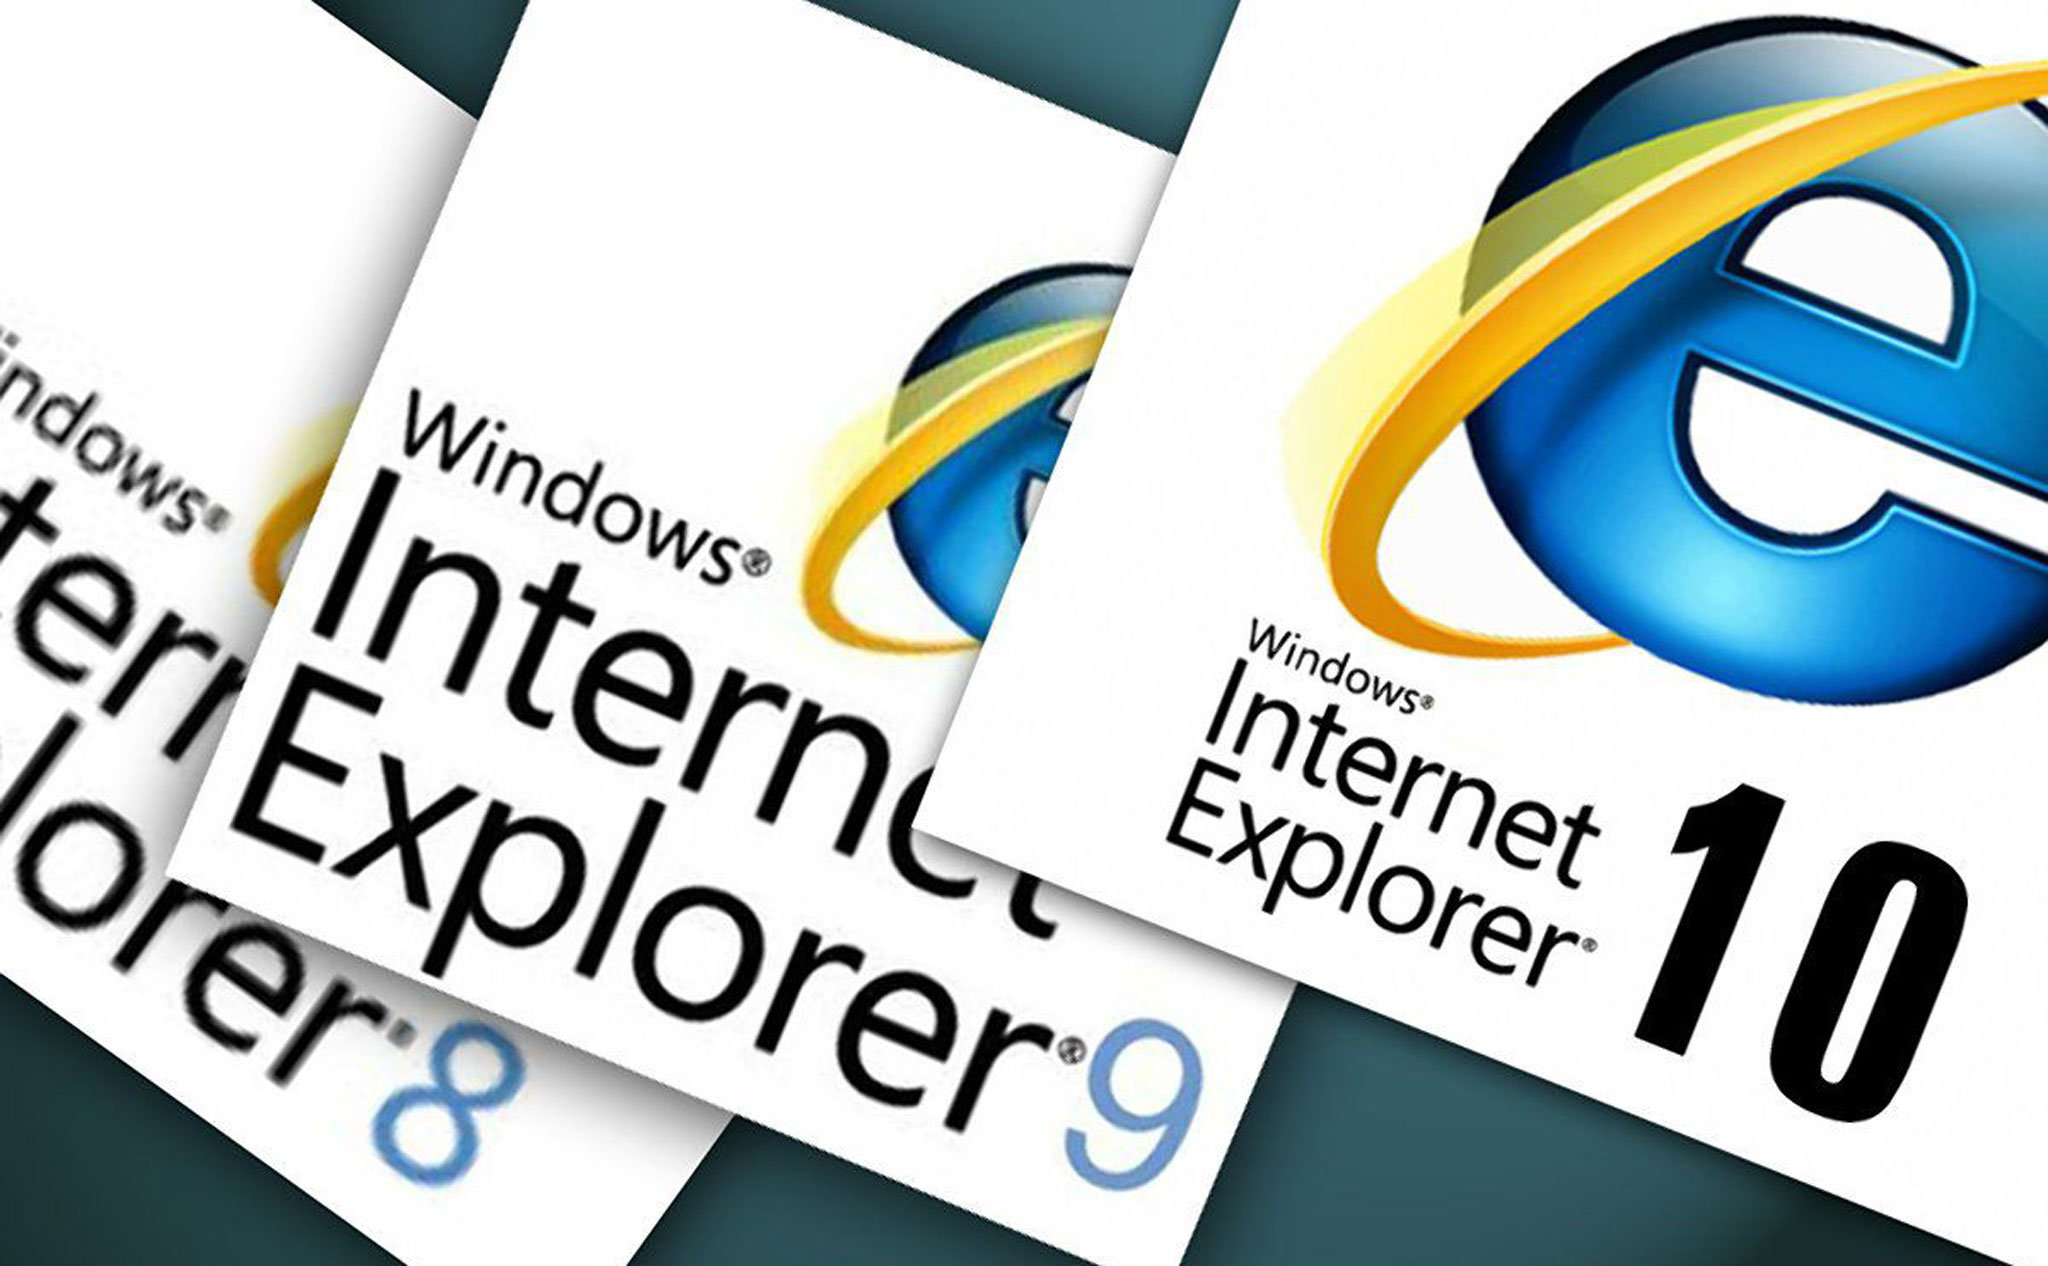 Tạm biệt Internet Explorer và 10 điều có thể bạn chưa biết